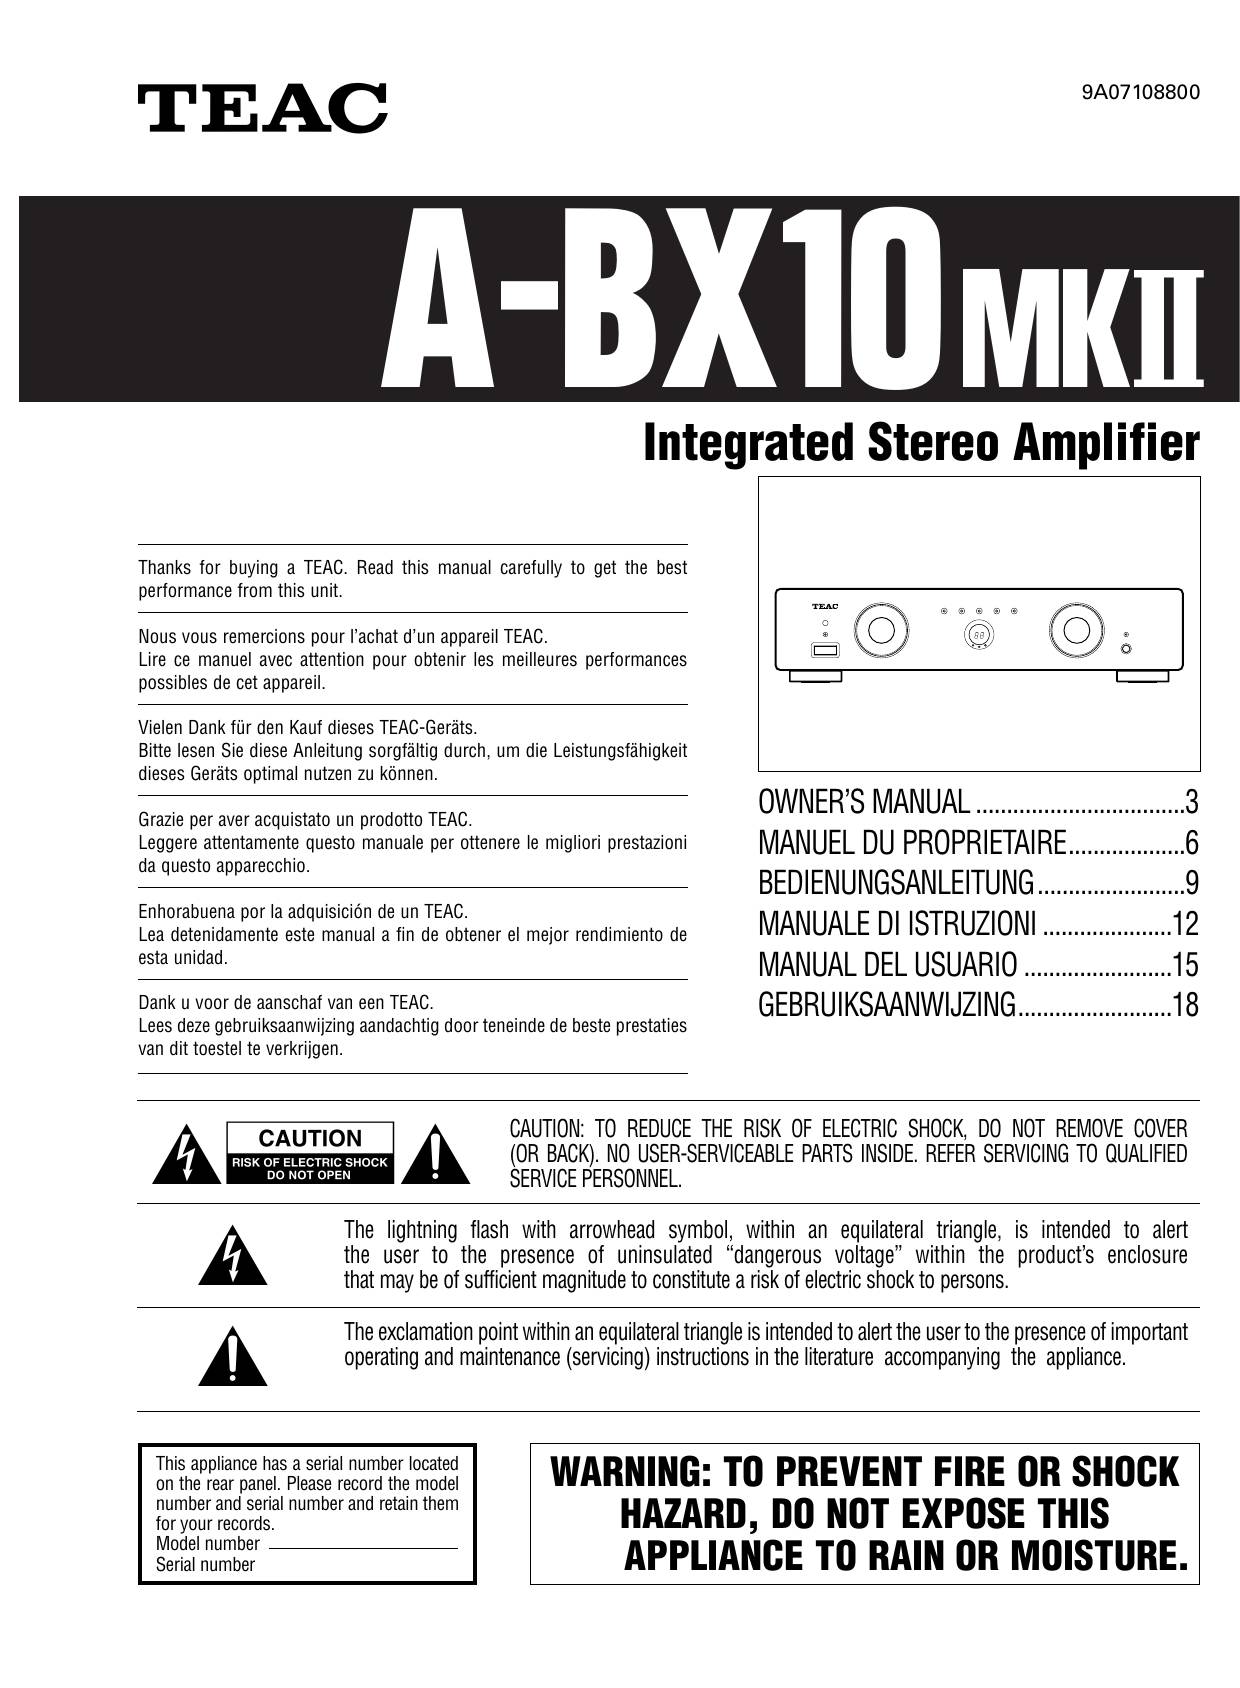 TEAC A-BX10 (mkI)